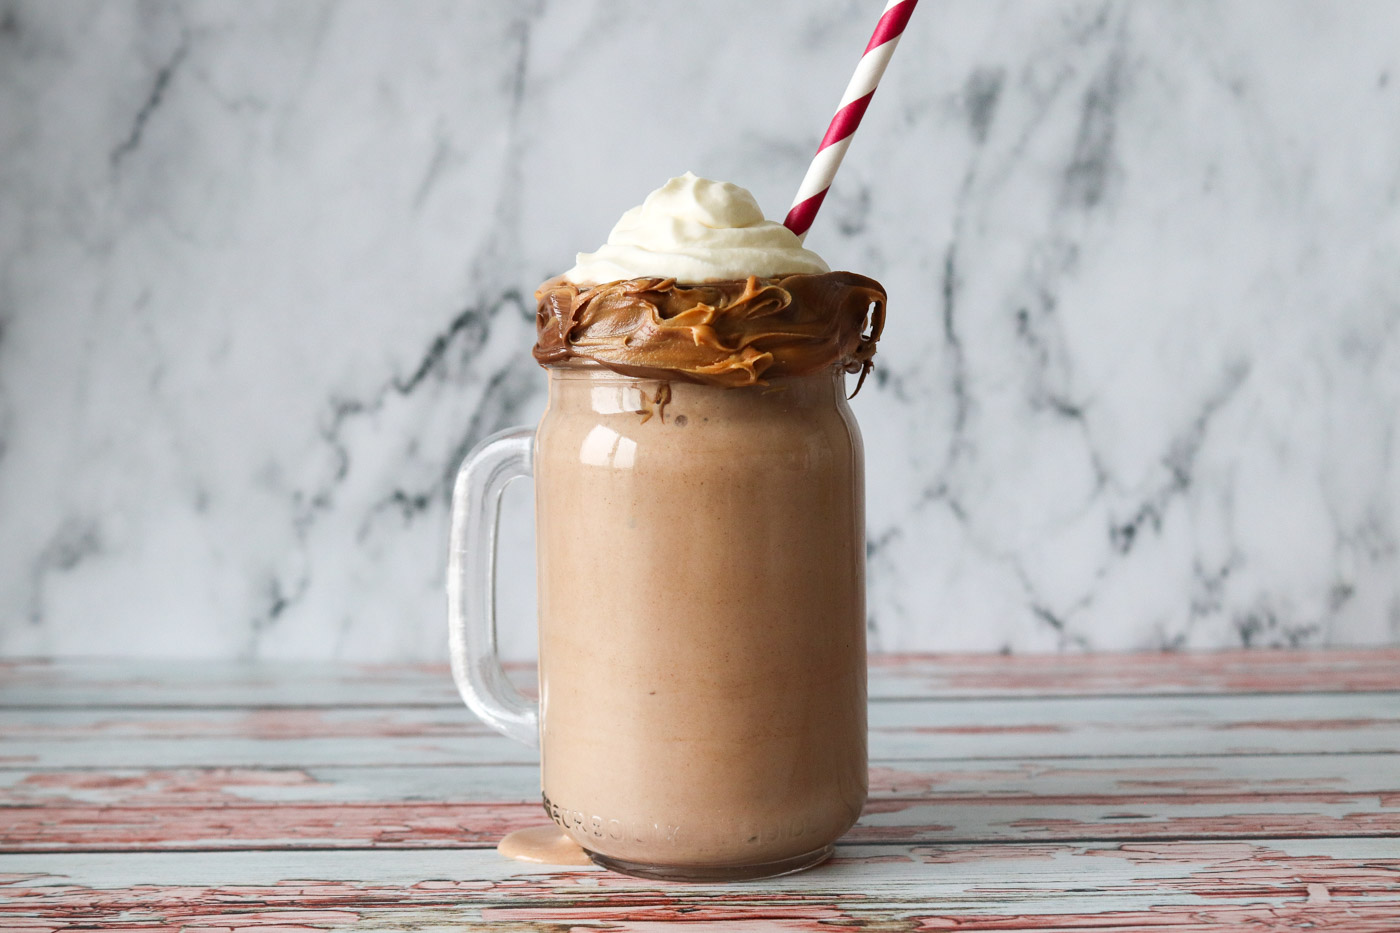 Lækker Milkshake Med Peanut Butter Og Nutella – Hjemmelavet Milkshake